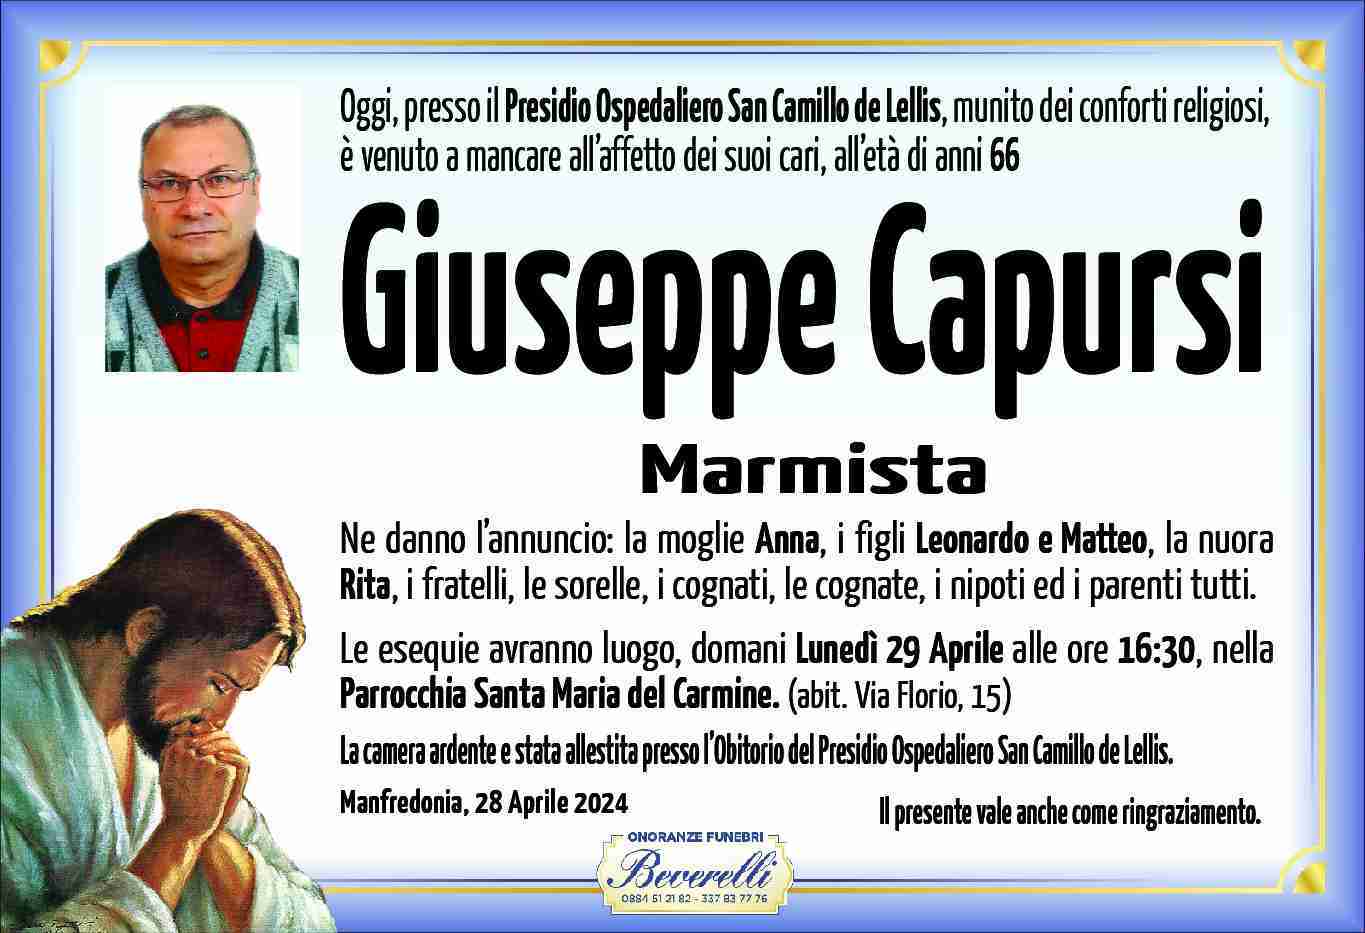 Giuseppe Capursi